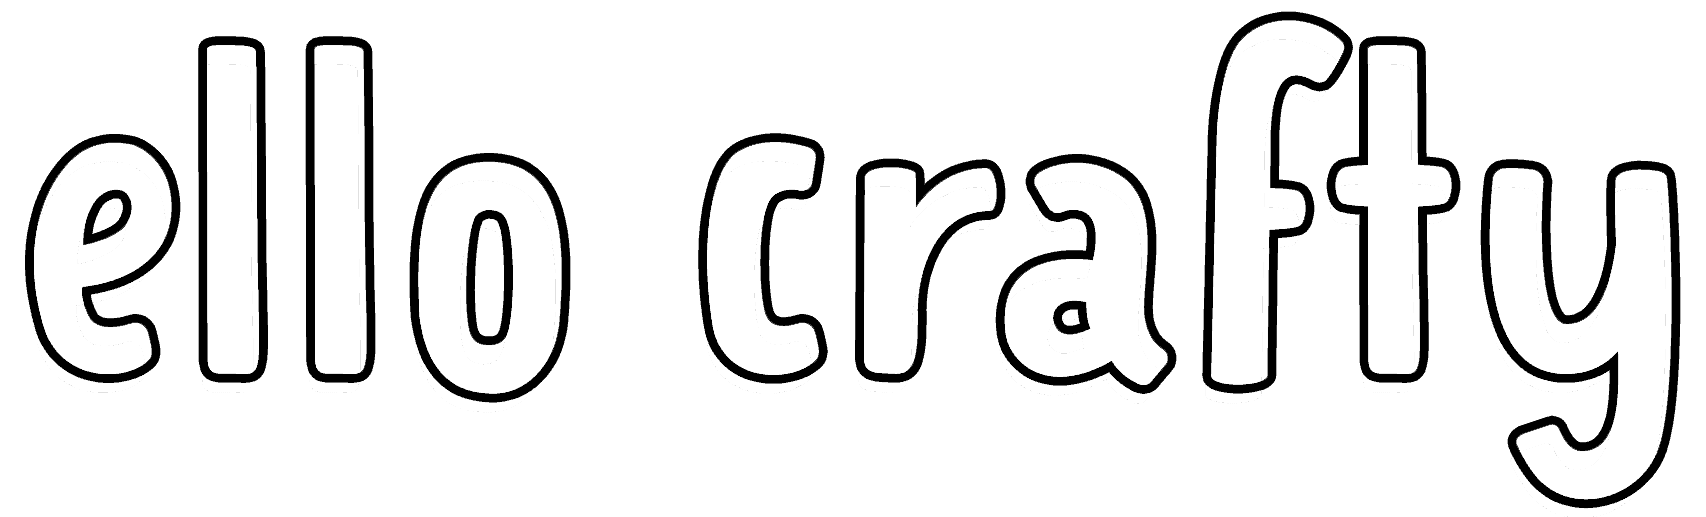 ello crafty text logo white with black outline